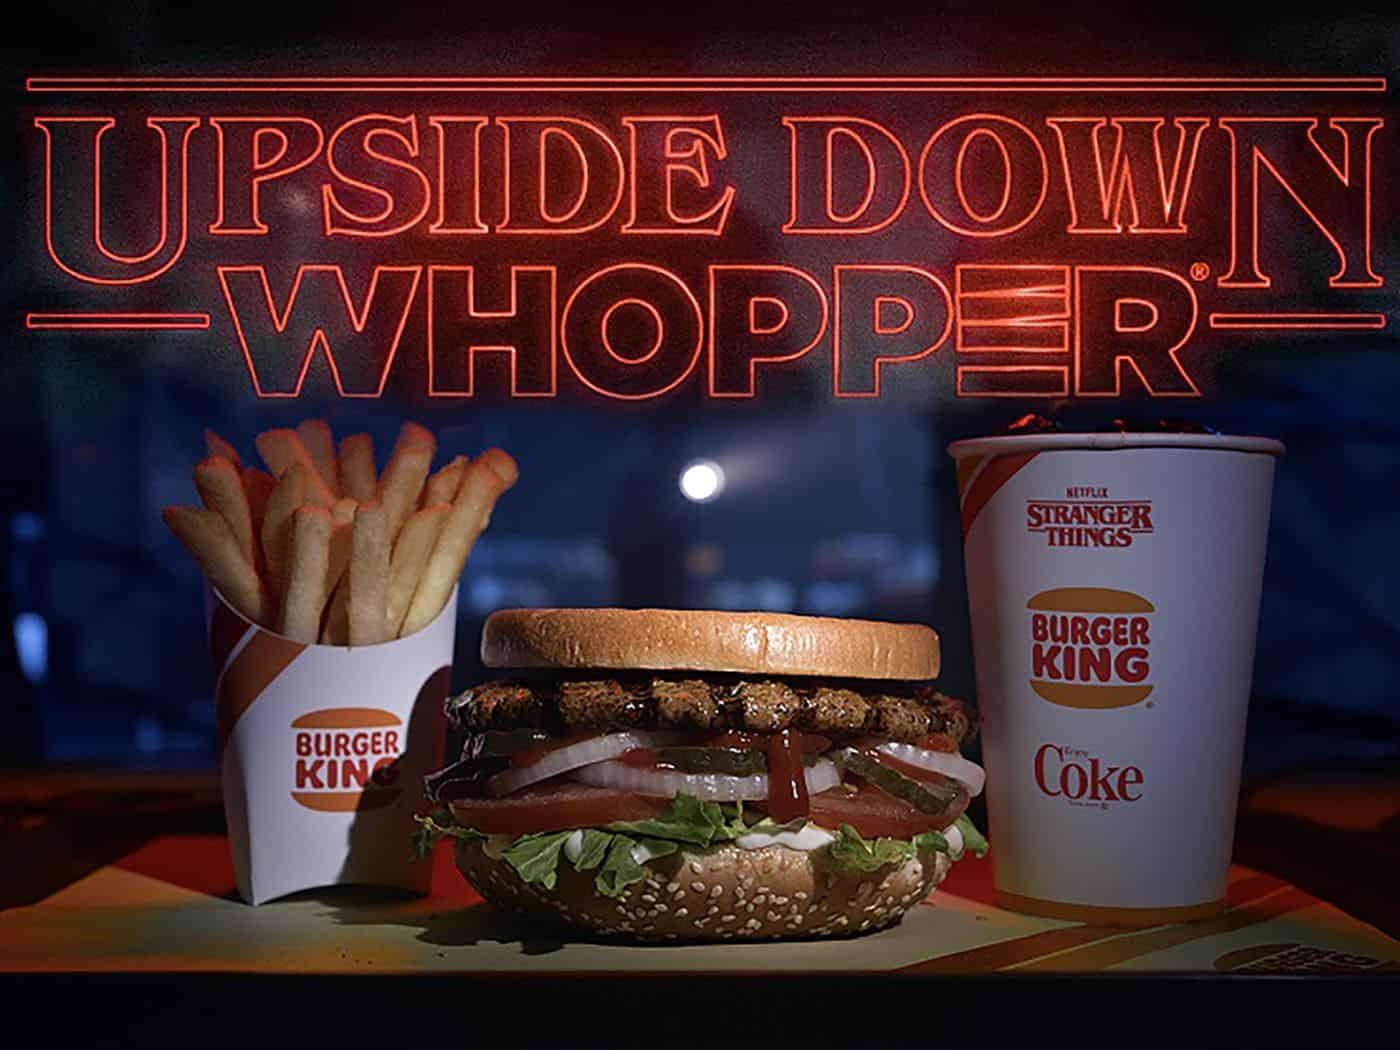 Netflix x Burger King collab (Stranger Things)